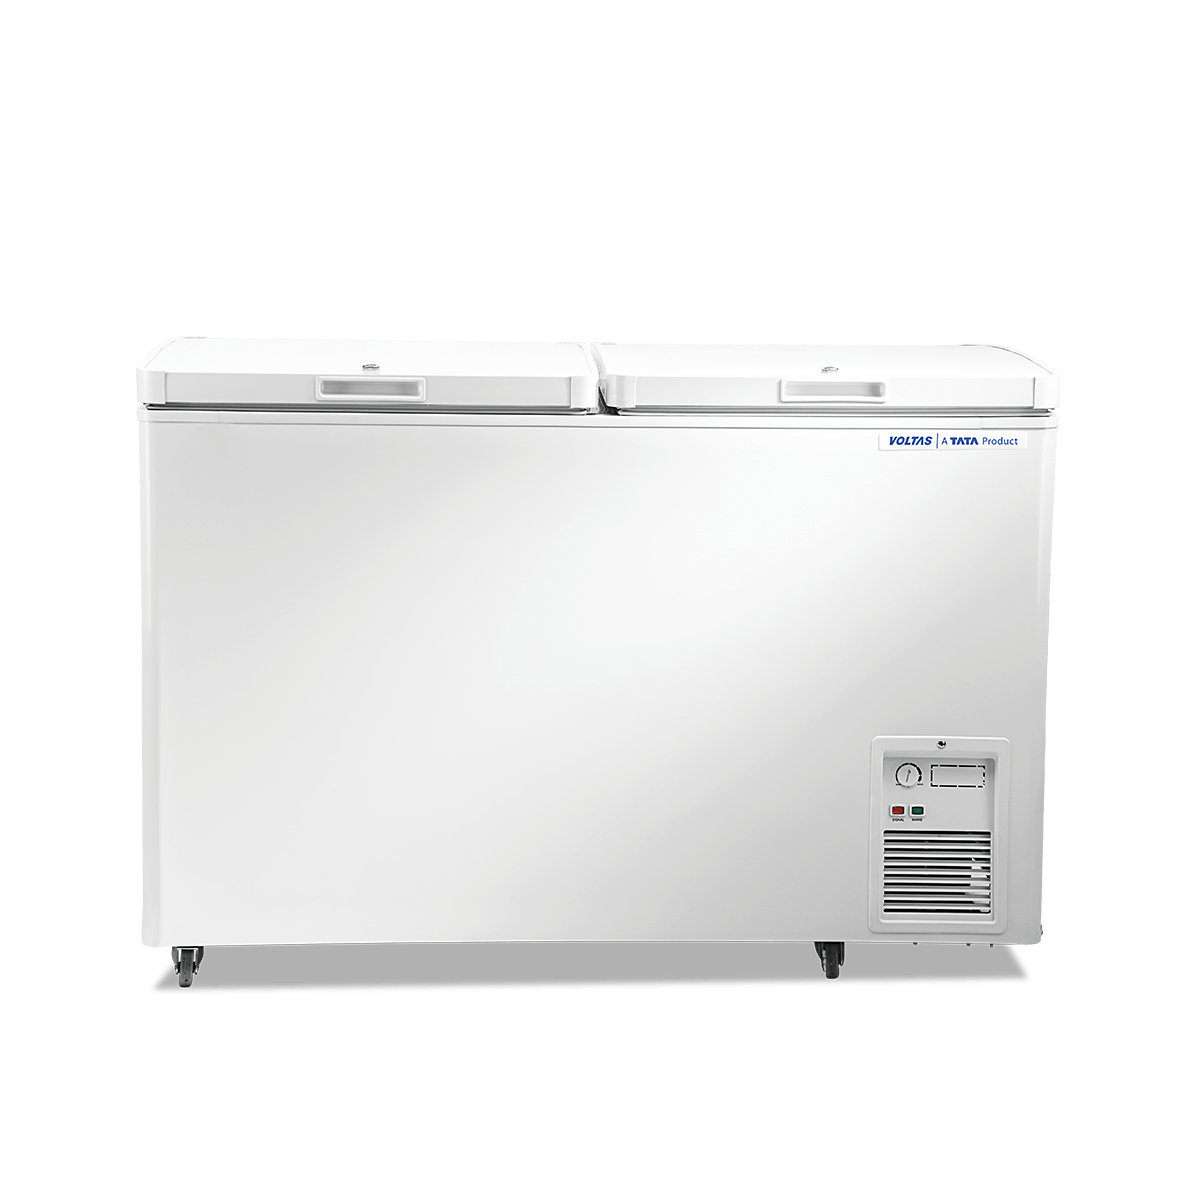 16++ D fridge voltas company ideas in 2021 